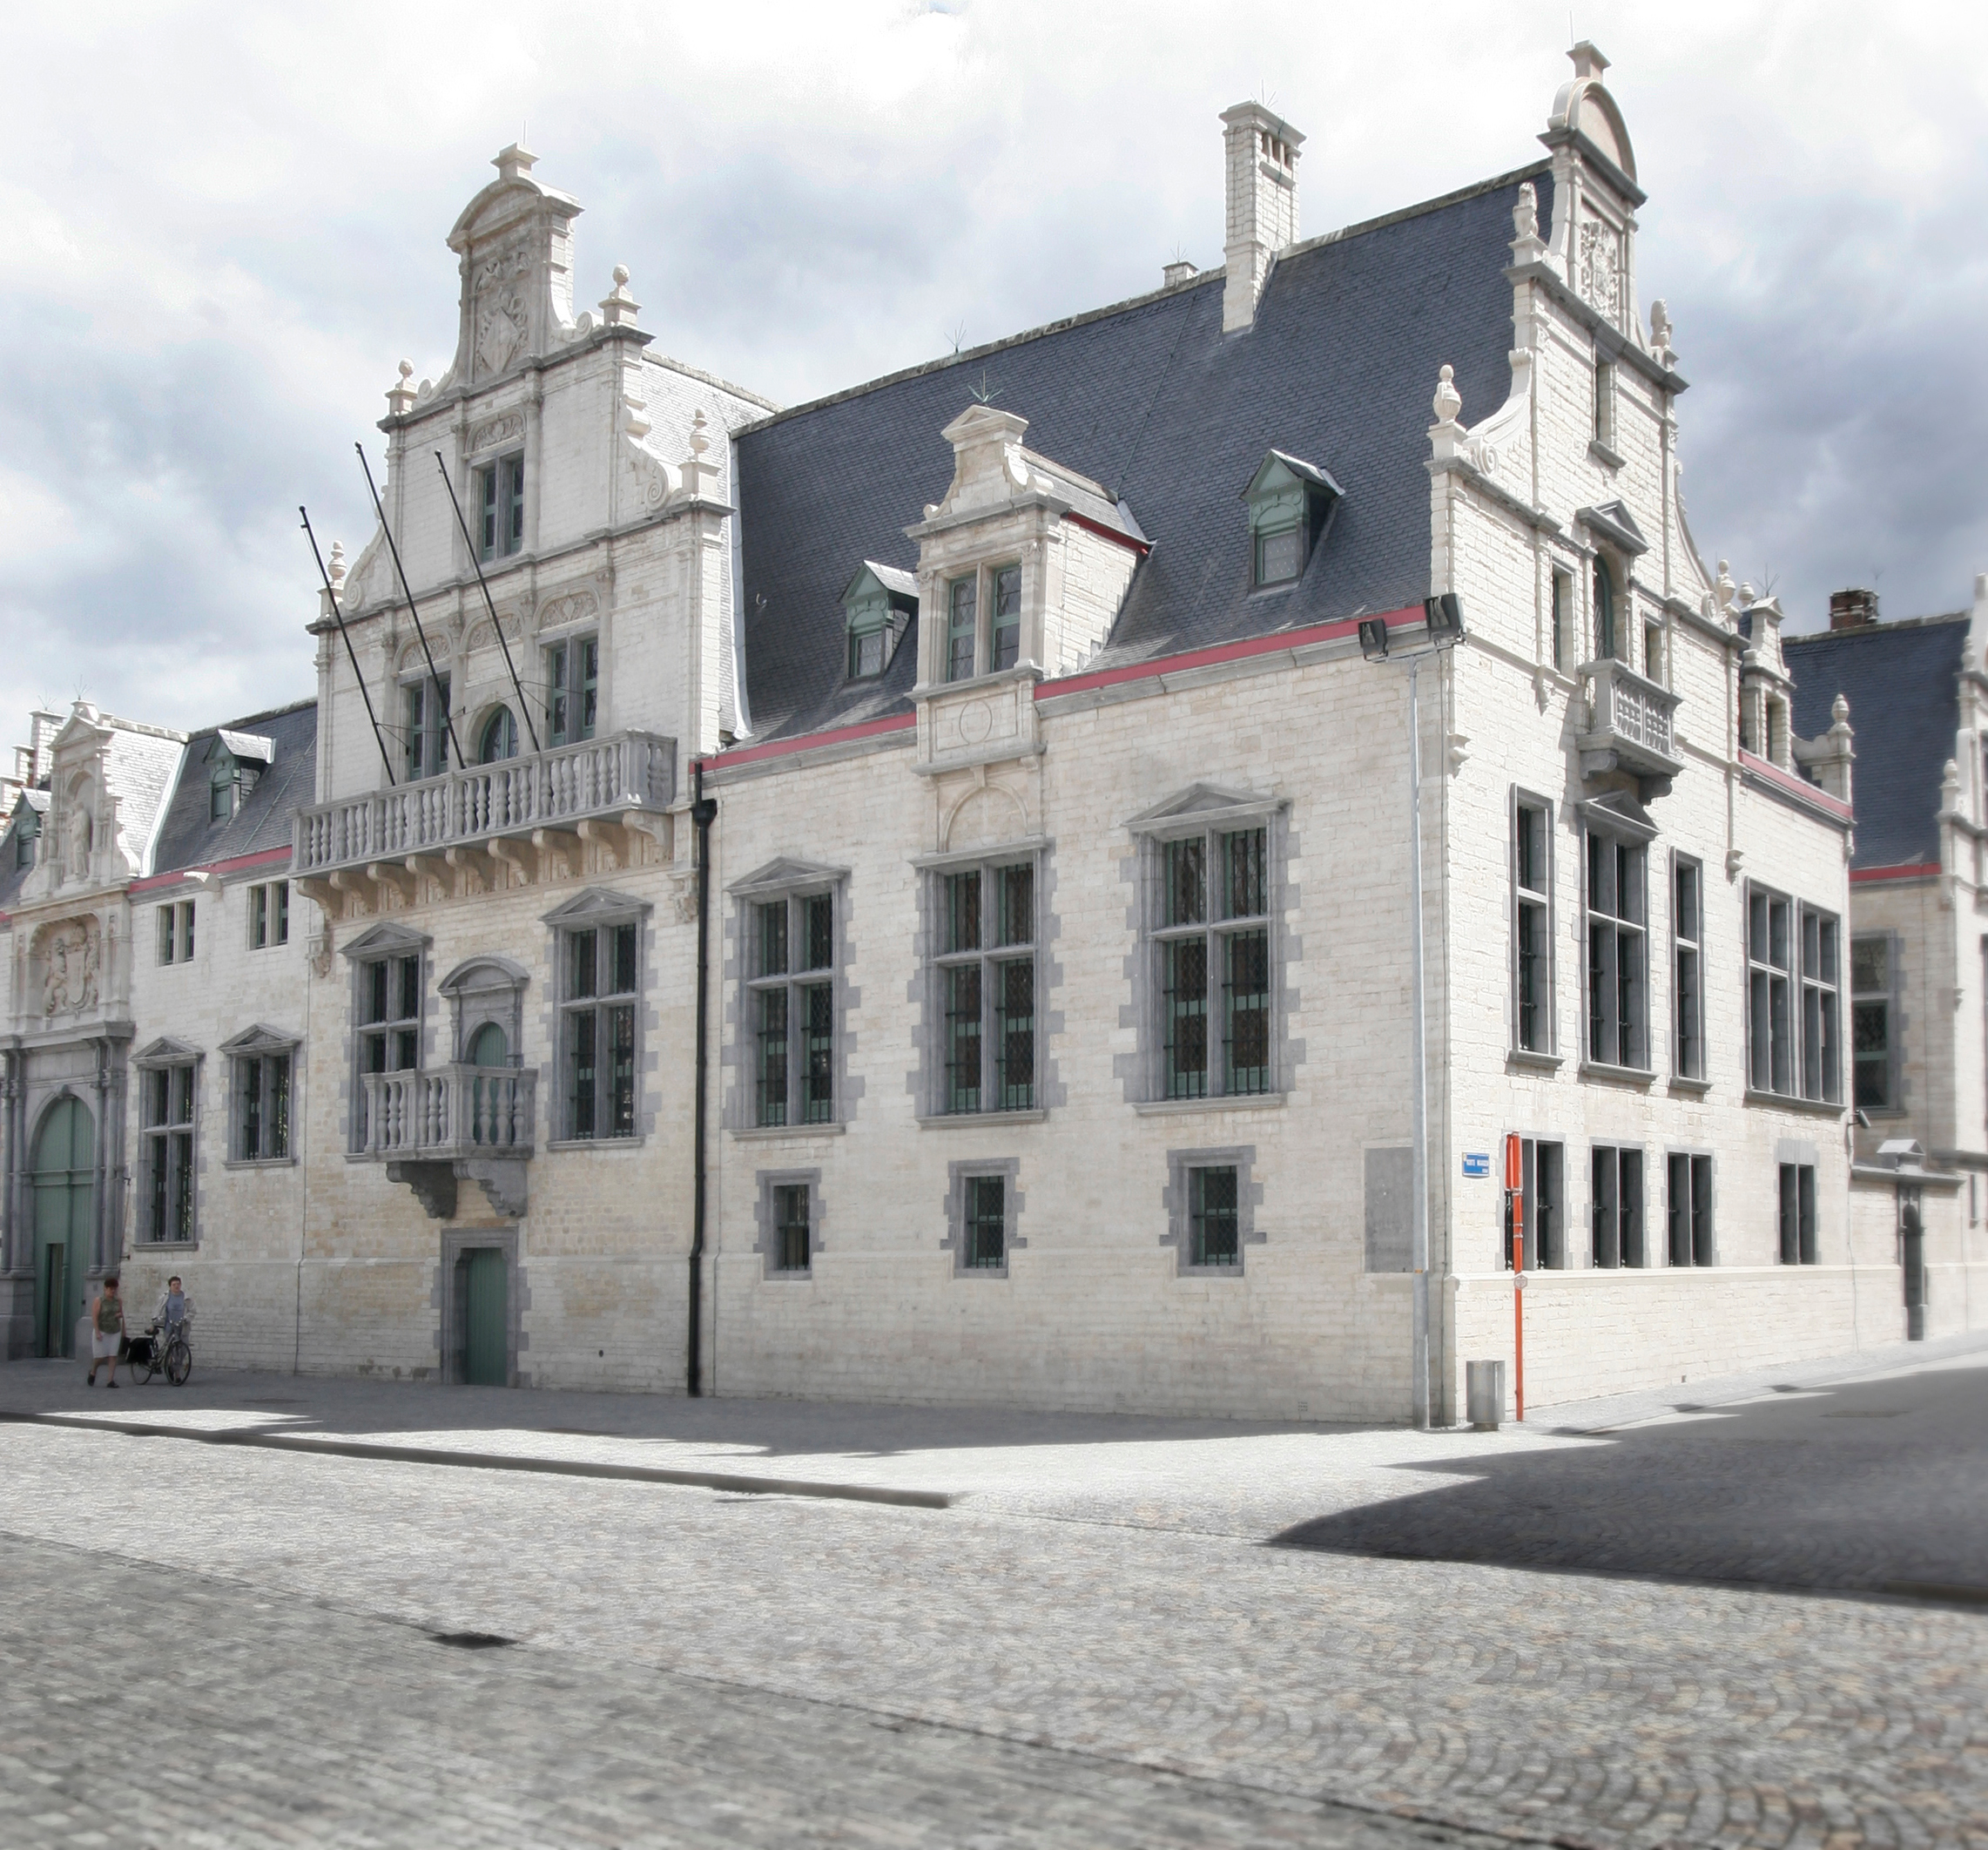 Het paleis van Margareta van Oostenrijk, later zetel van de Grote Raad, nu gerechtshof. © Stadsarchief Mechelen - www.regionalebeeldbank.be